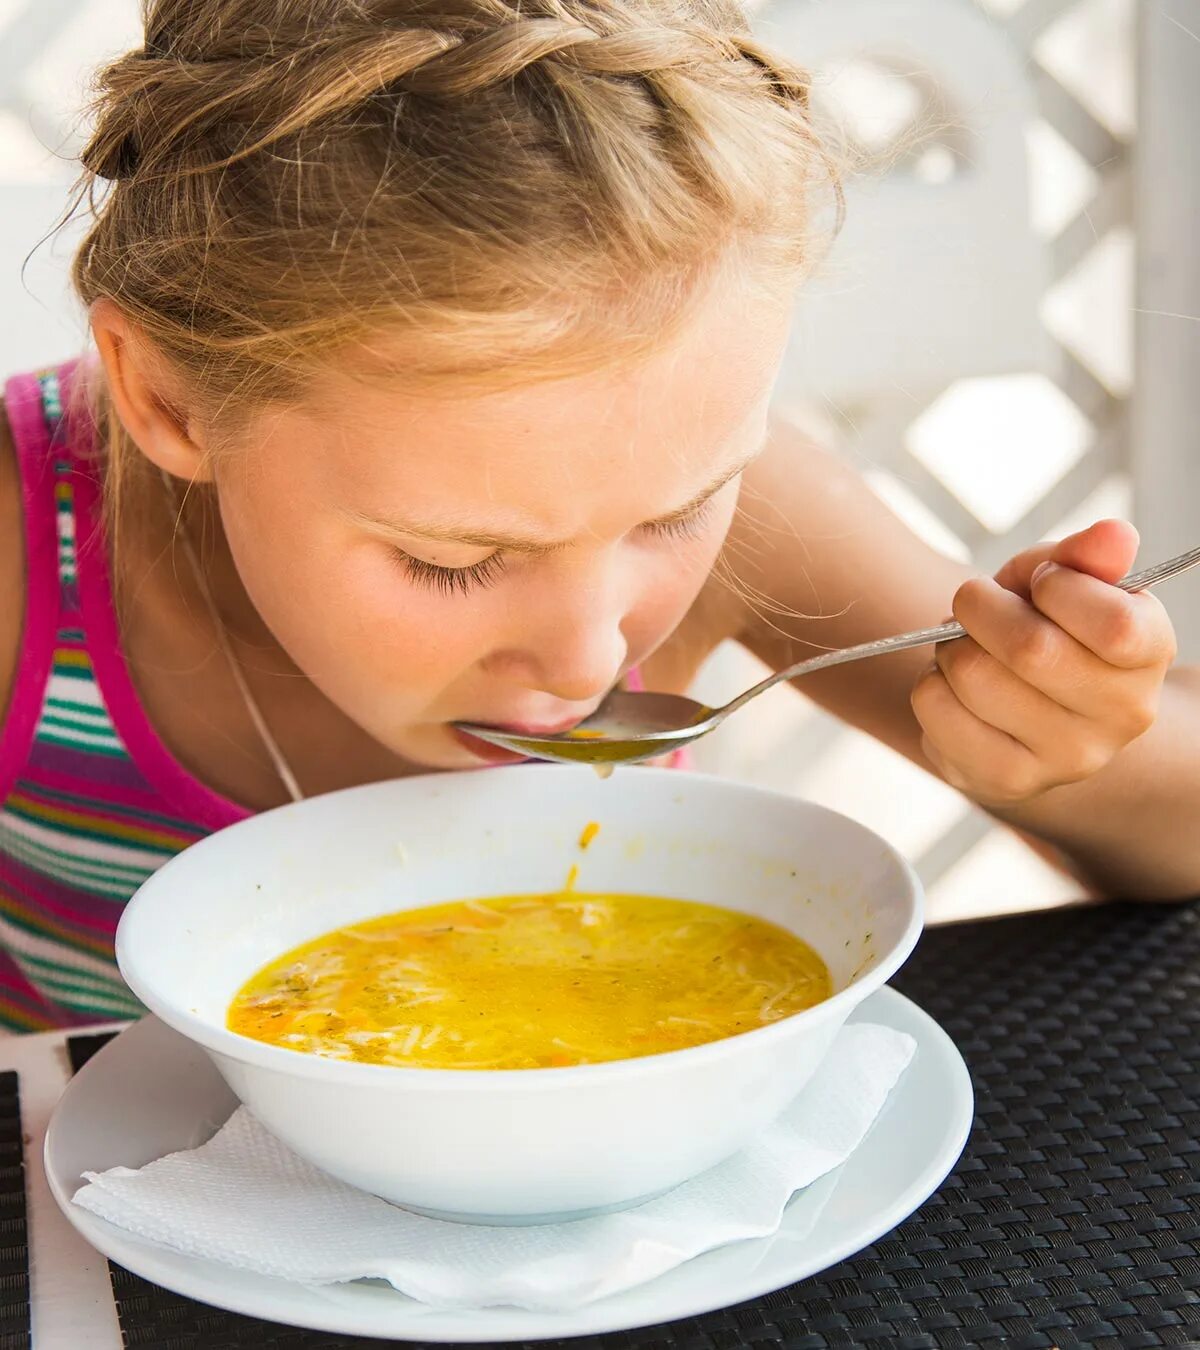 Едят супы на обед. Ест суп. Девочка ест суп. Ребенок ест суп. Человек ест суп.